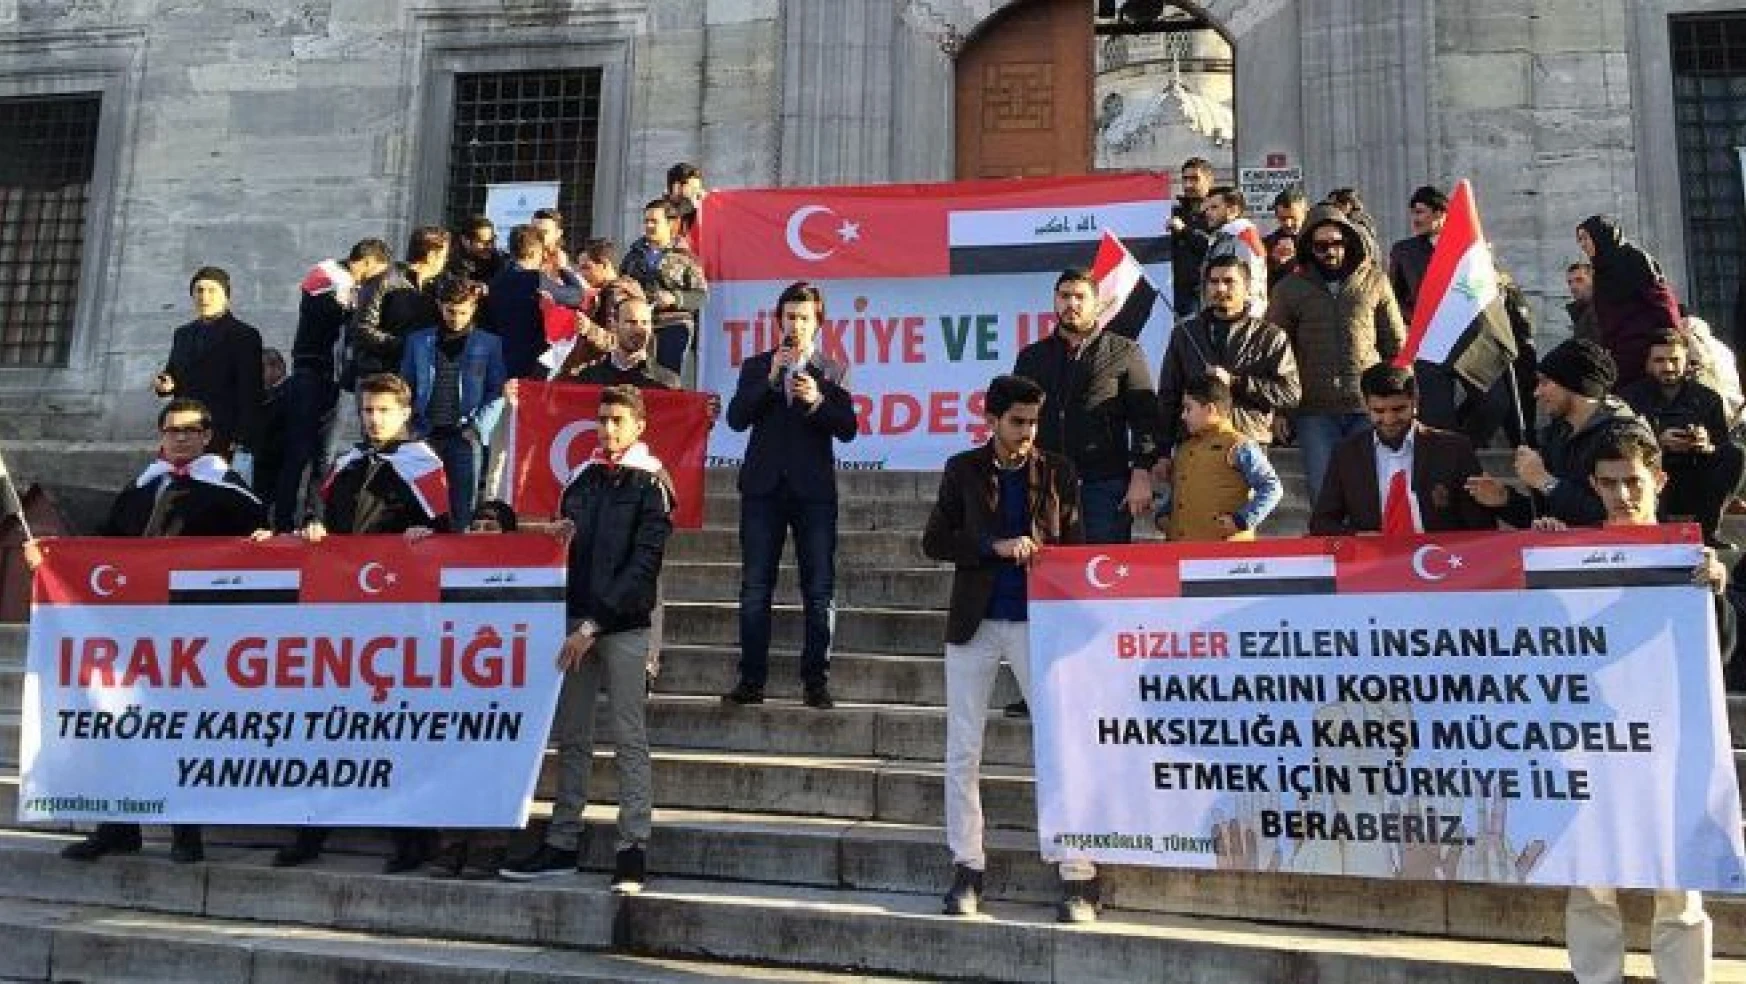 İstanbul'da 'Irak gençliği teröre karşı Türkiye'nin yanındadır' eylemi